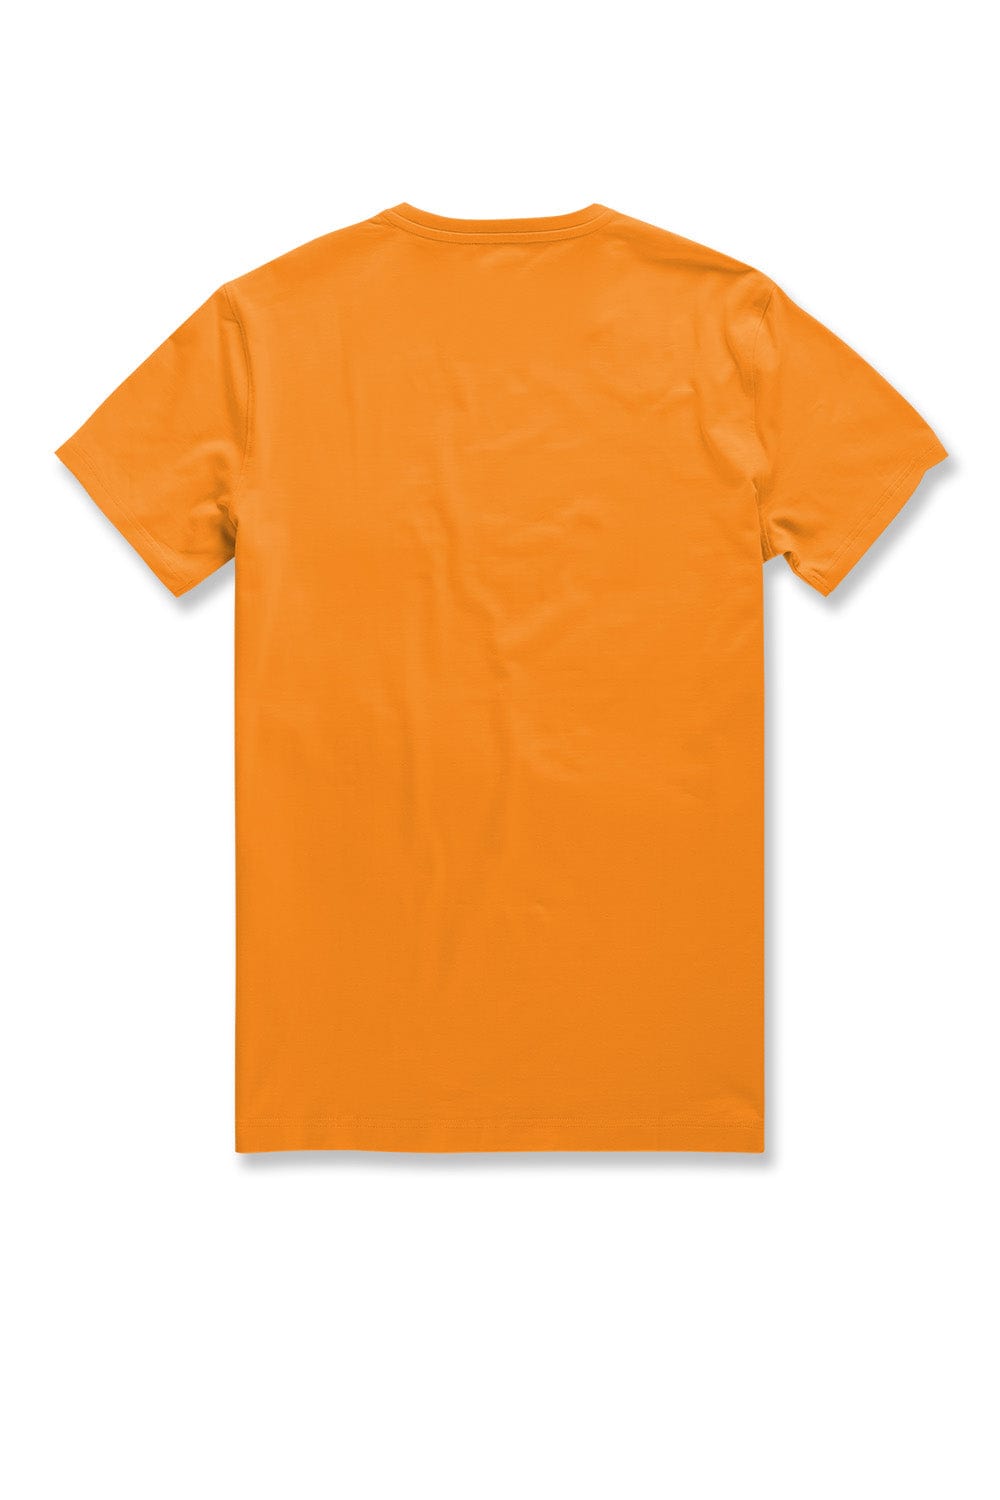 JC Big Men Big Men's Premium Crewneck T-Shirt (University Gold)